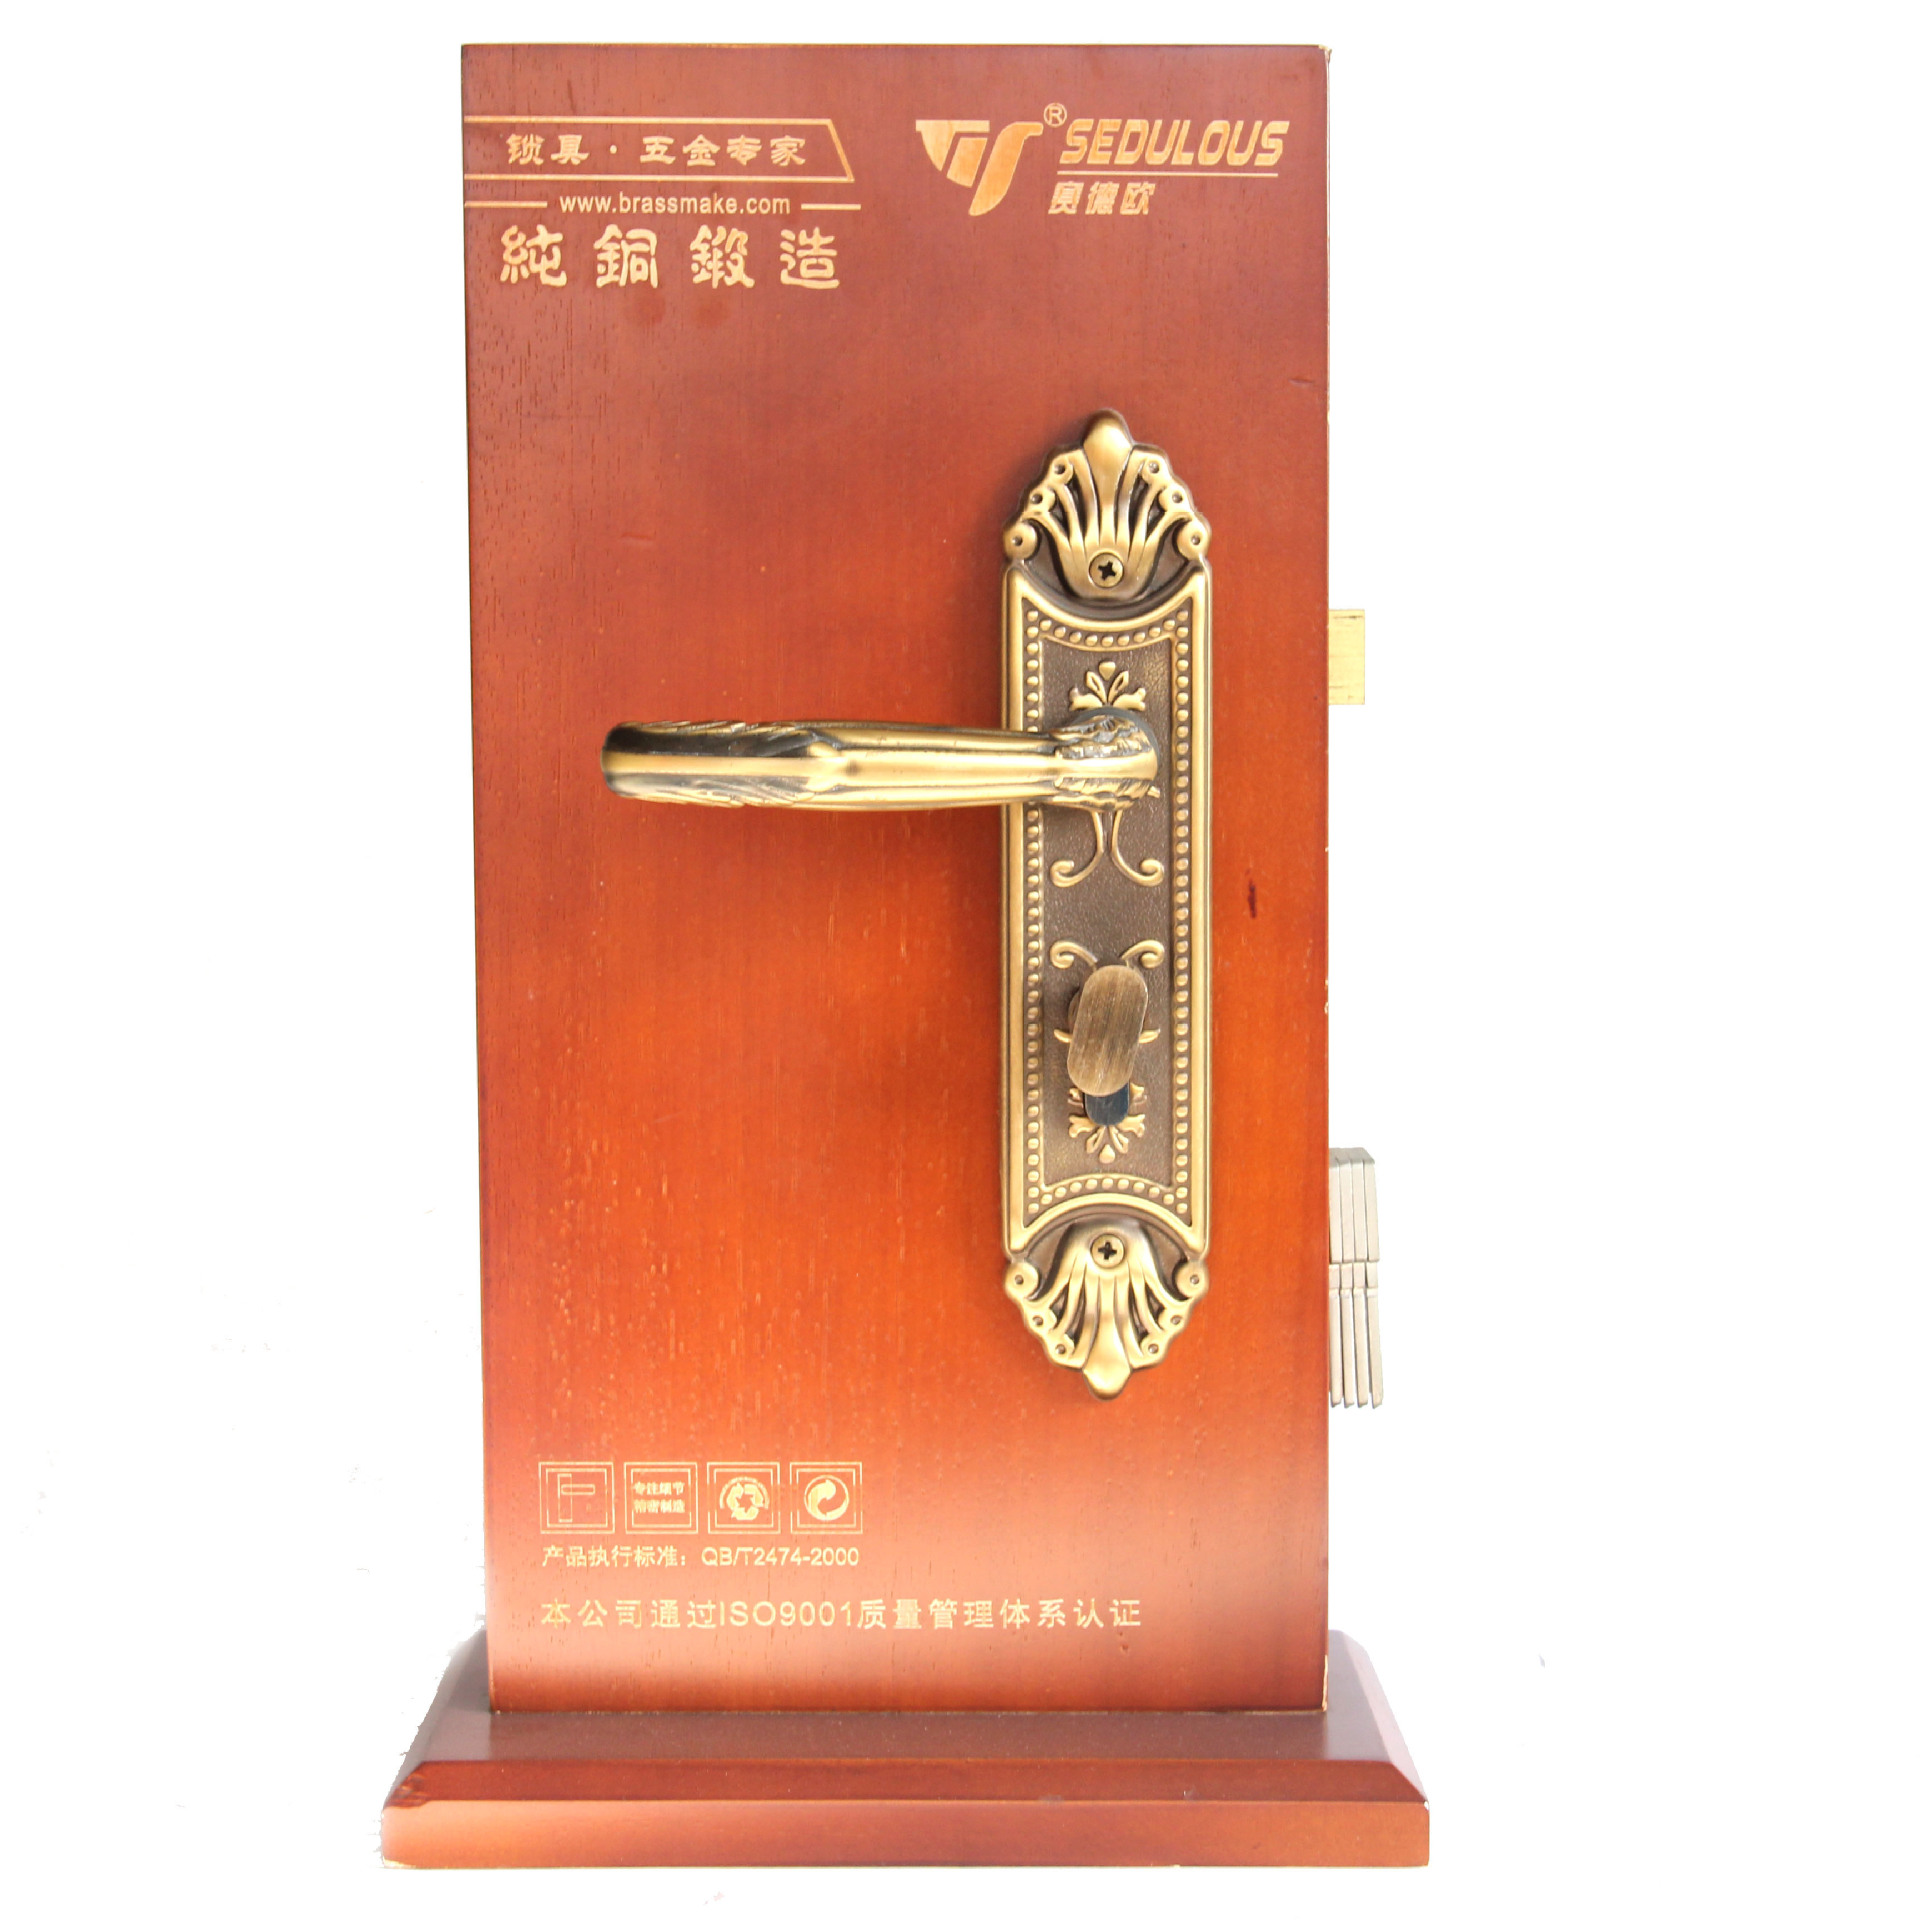 Cheap Price Popular Brass Door Handle Pull Handle For Door